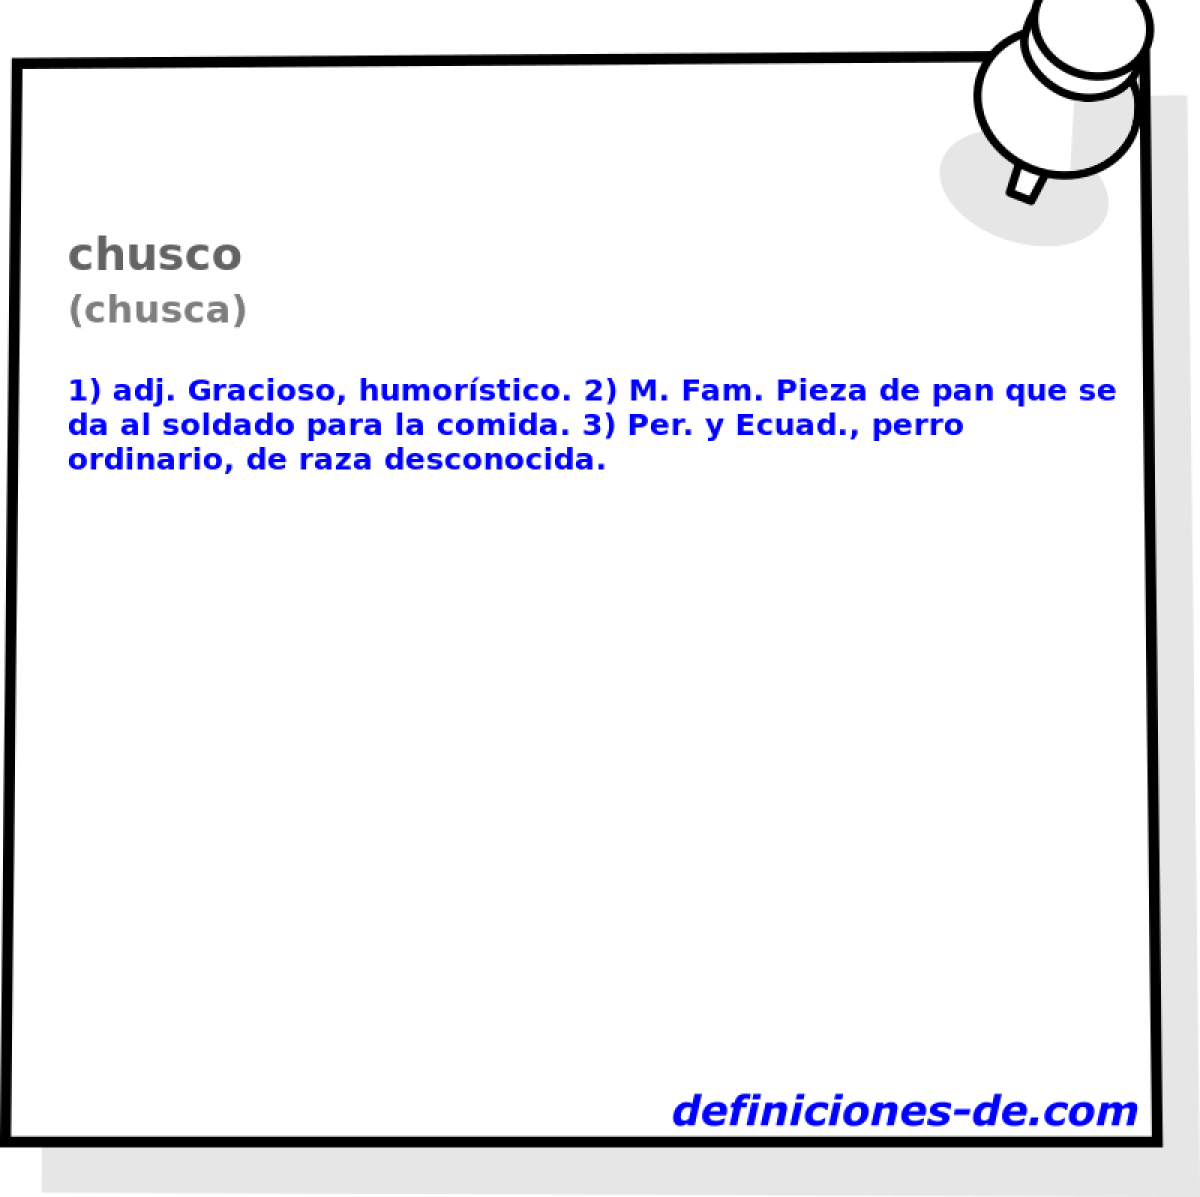 chusco (chusca)